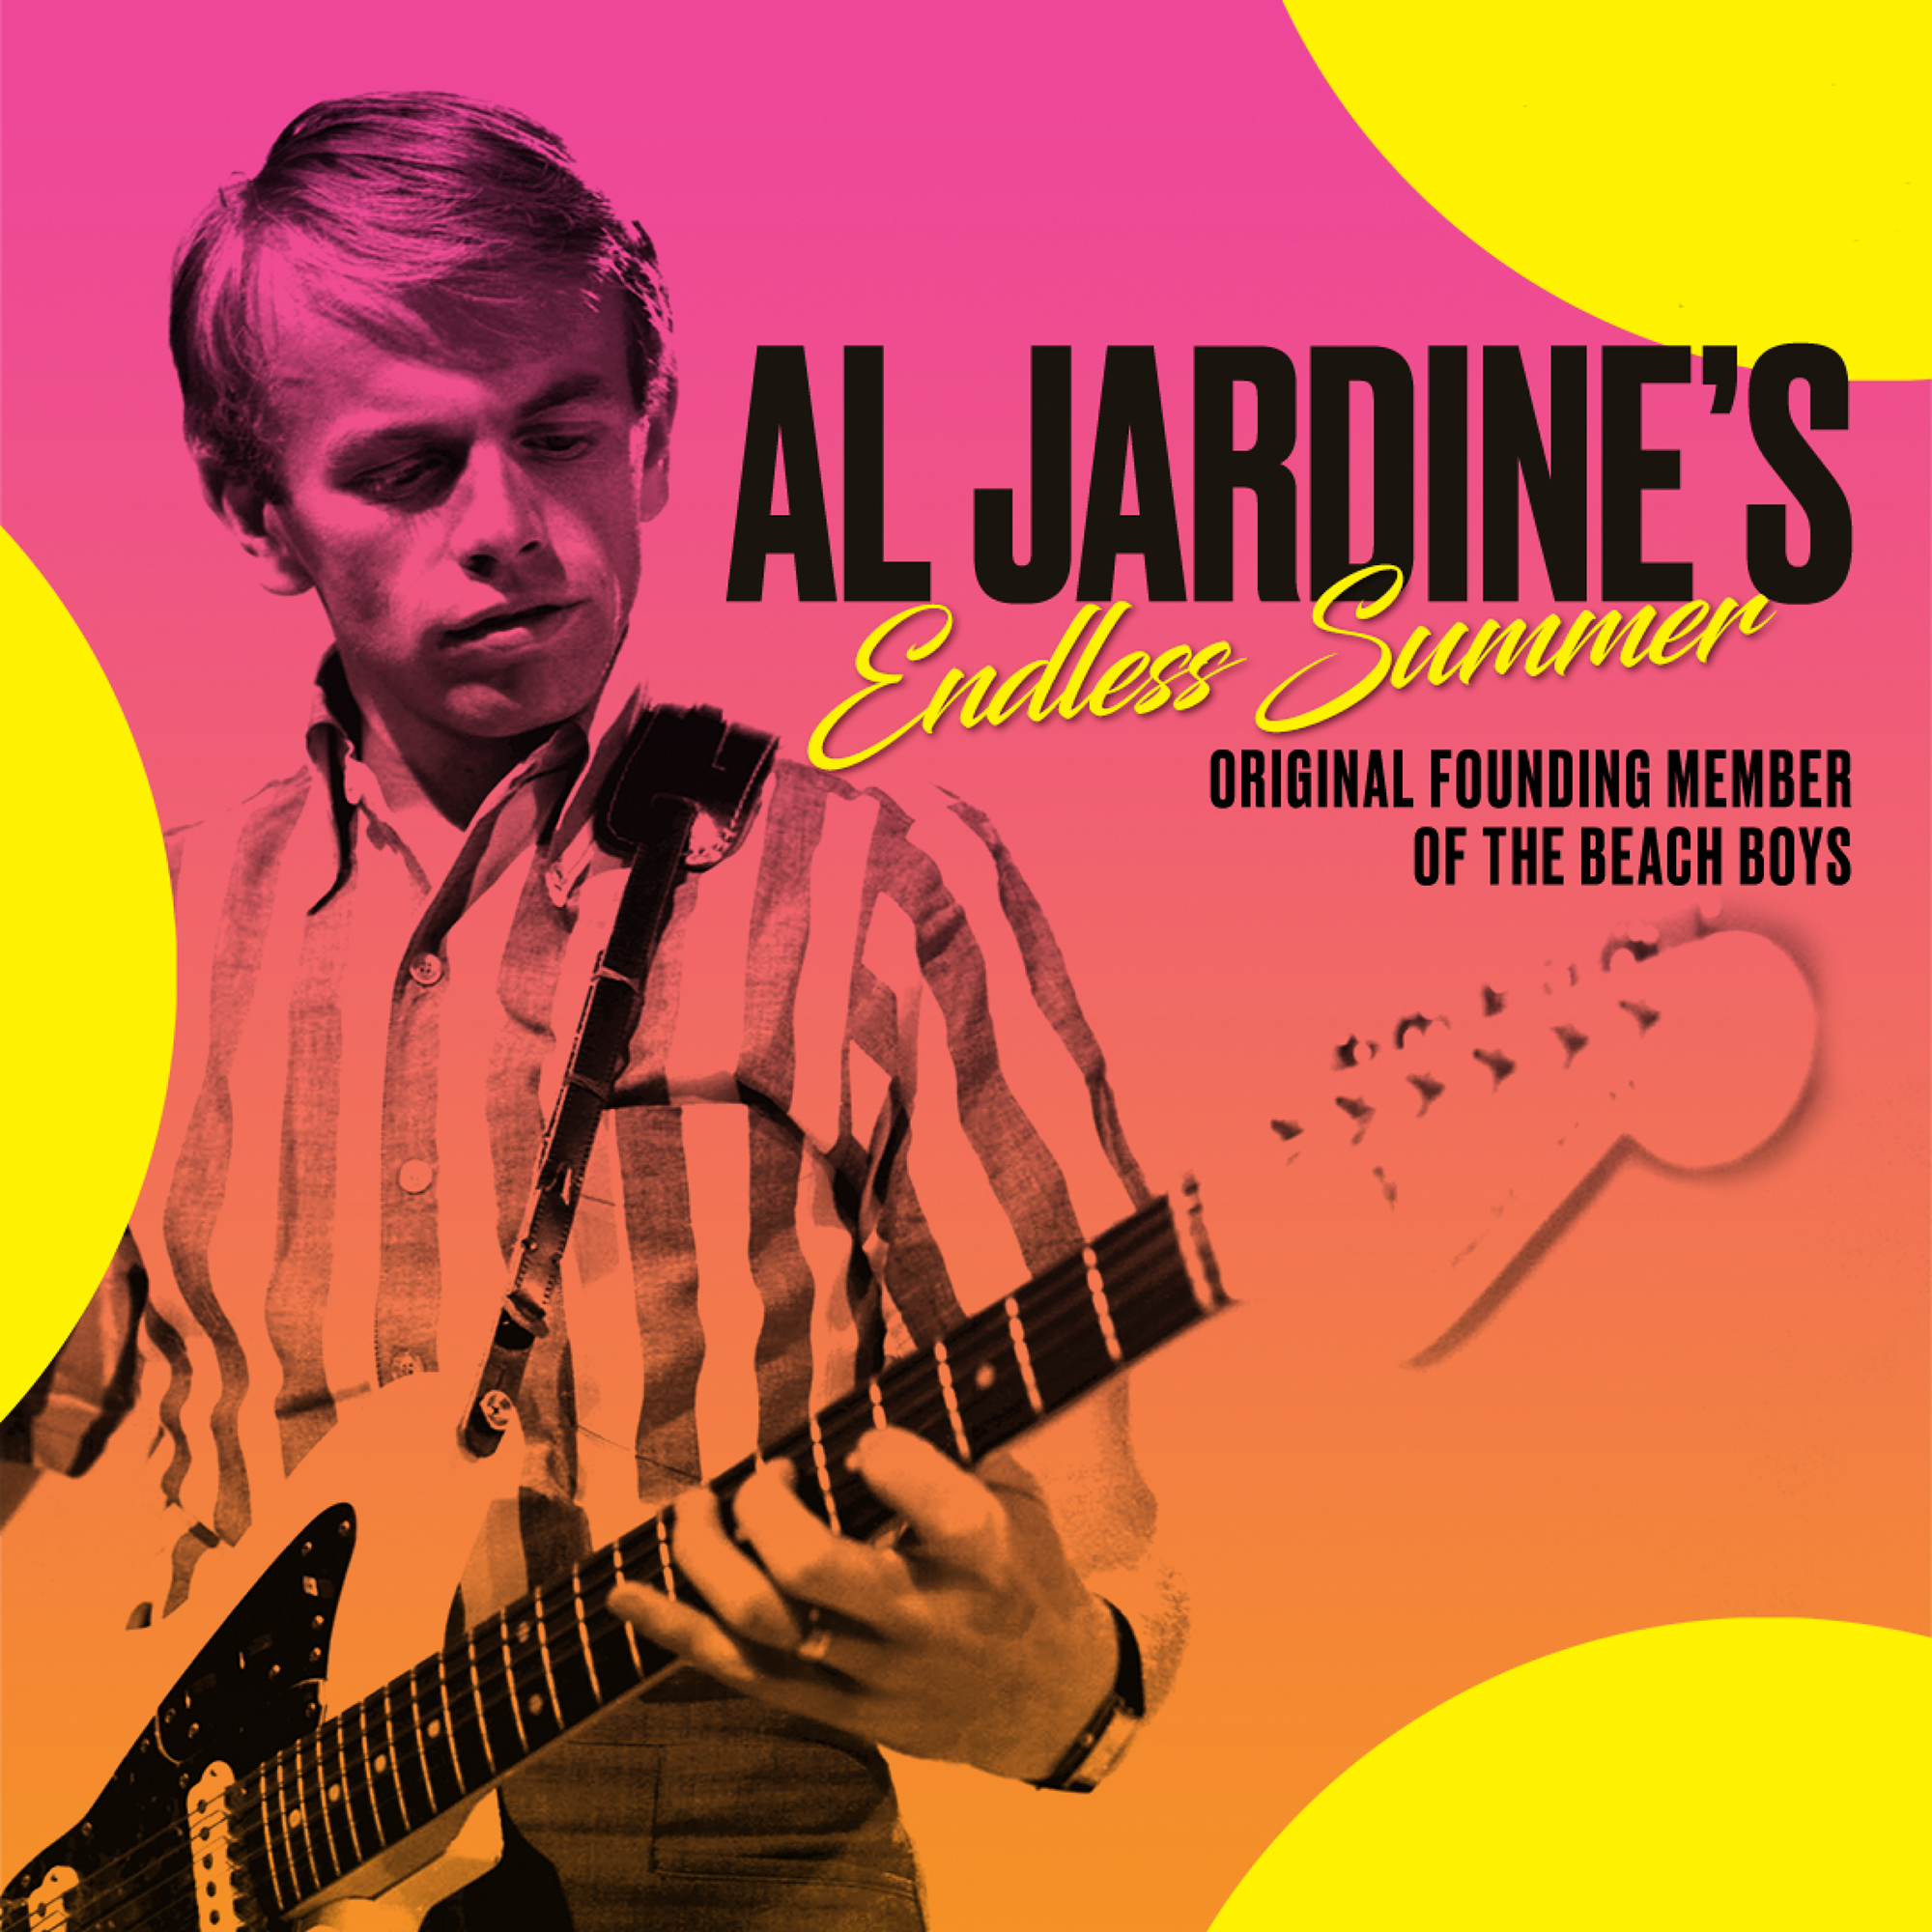 Al Jardine's Endless Summer